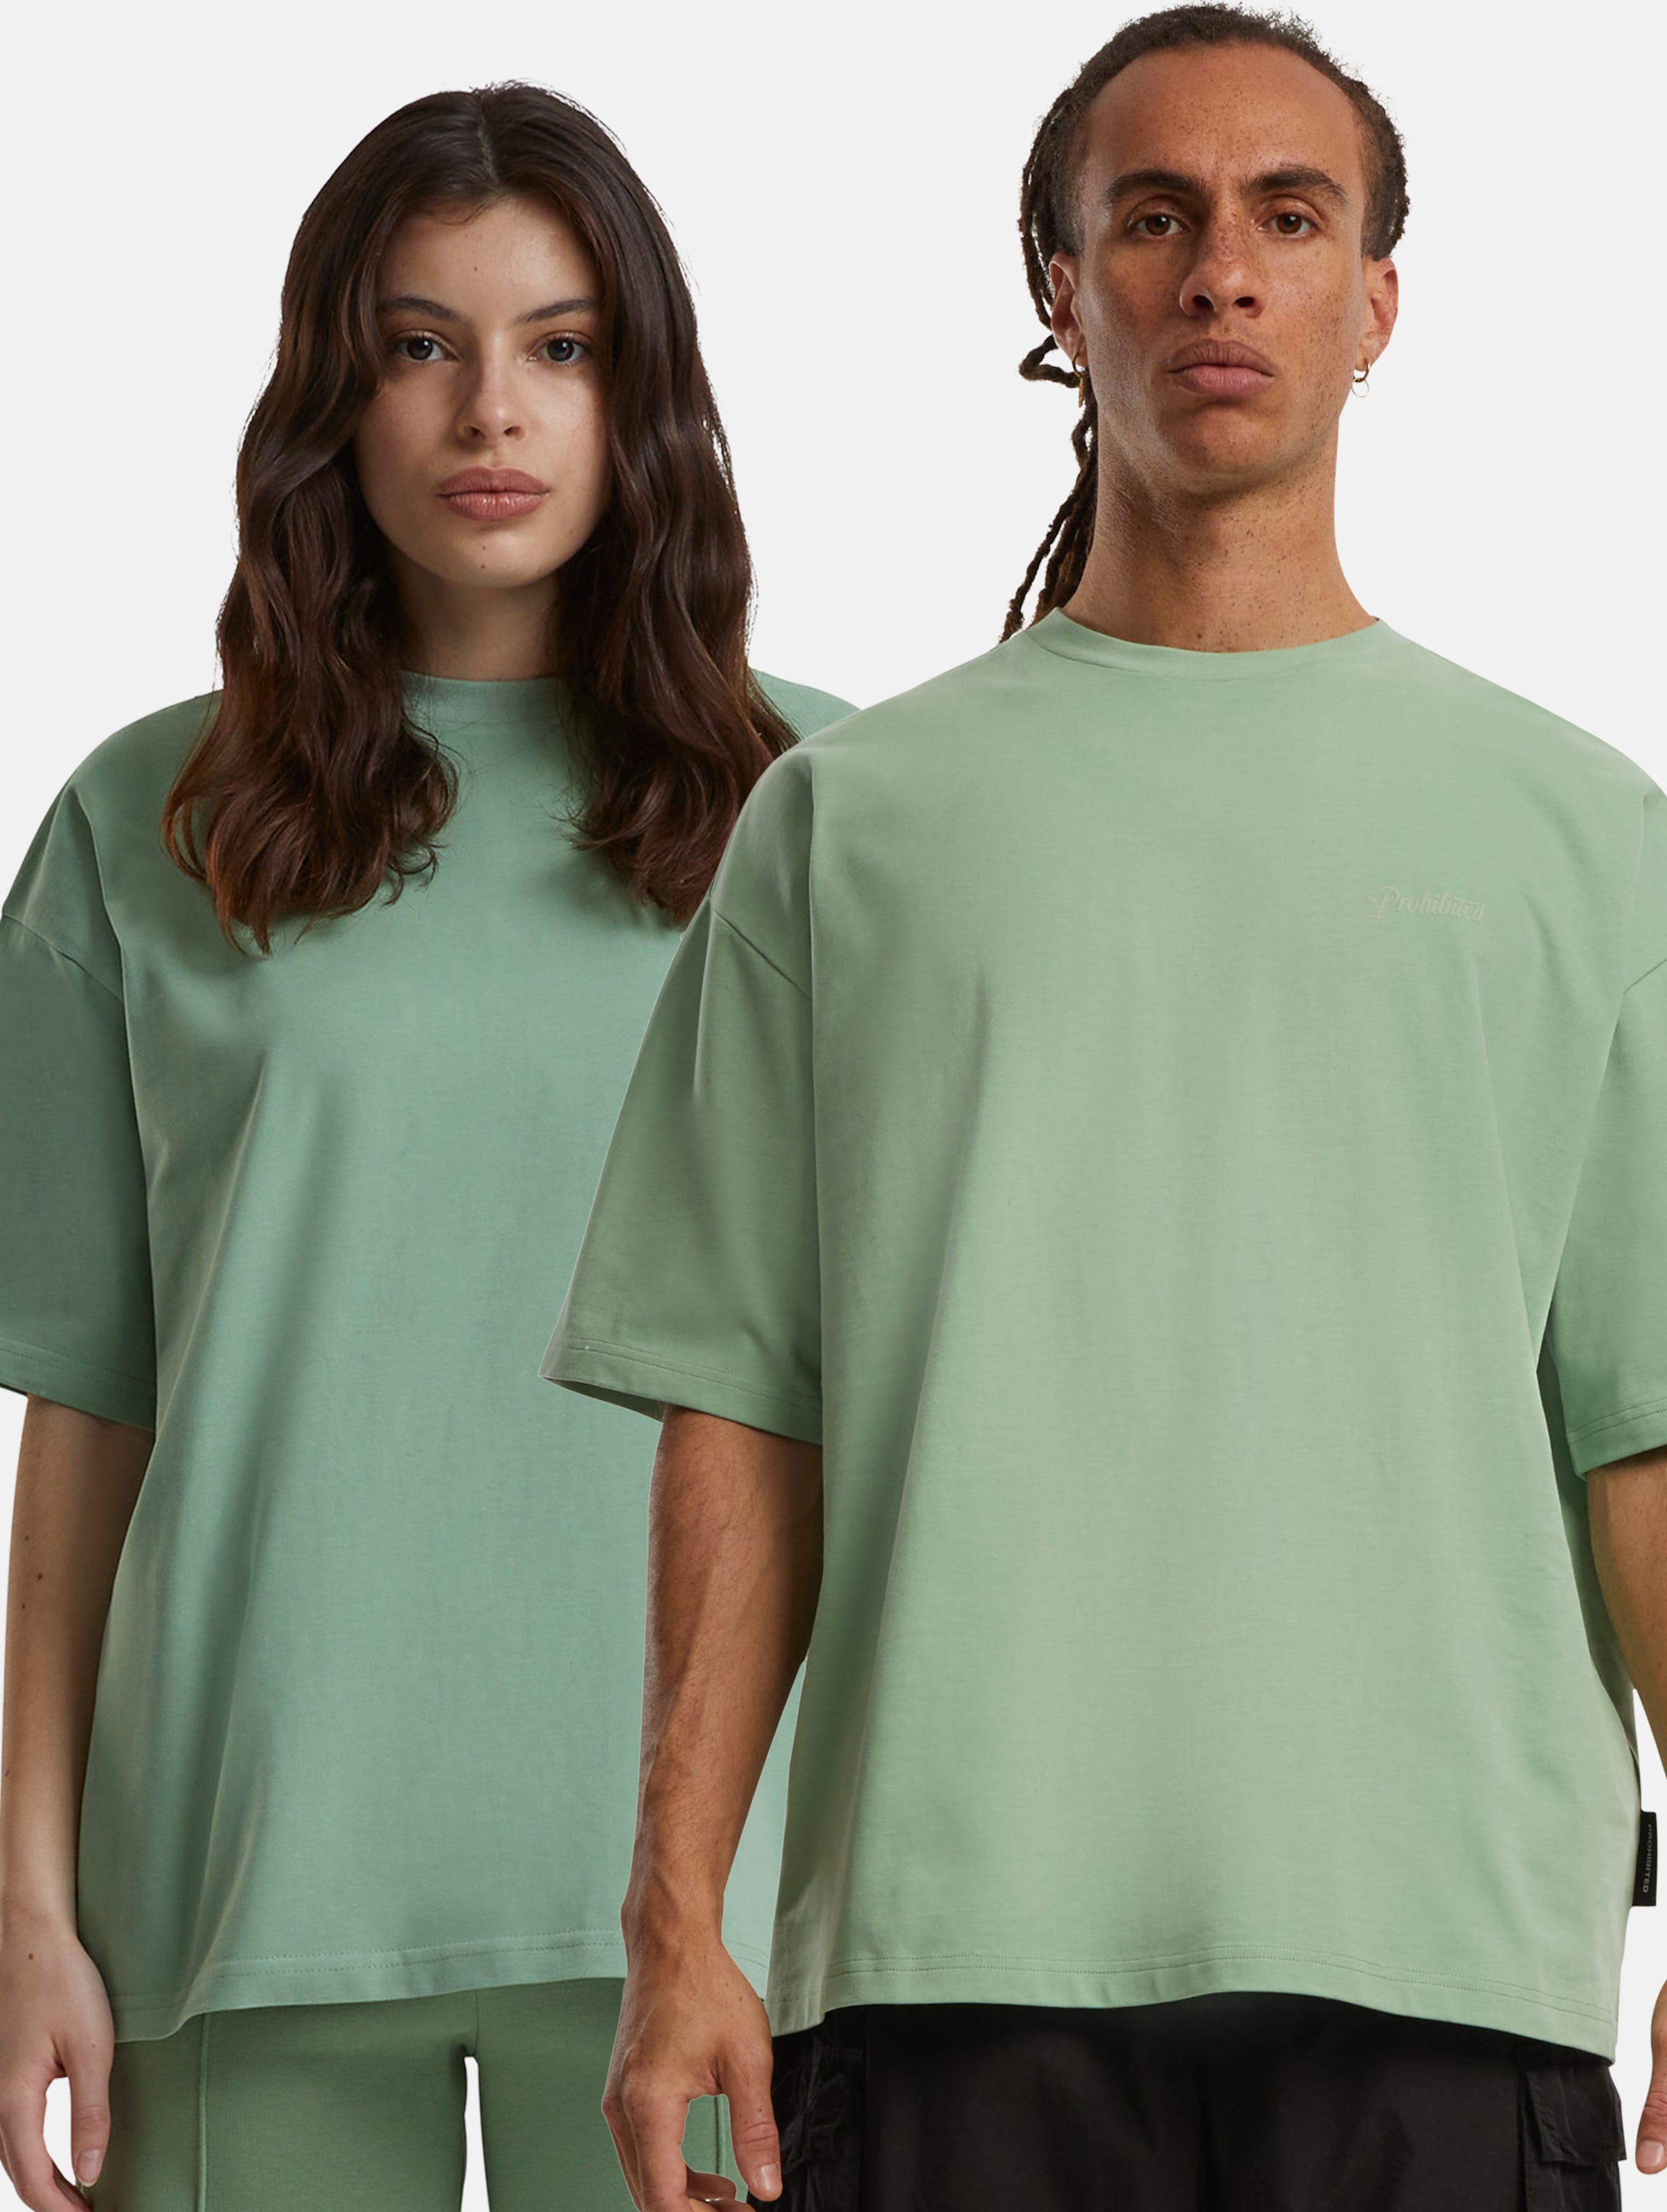 Prohibited 10119 V2 T-Shirts Frauen,Männer,Unisex op kleur groen, Maat XS